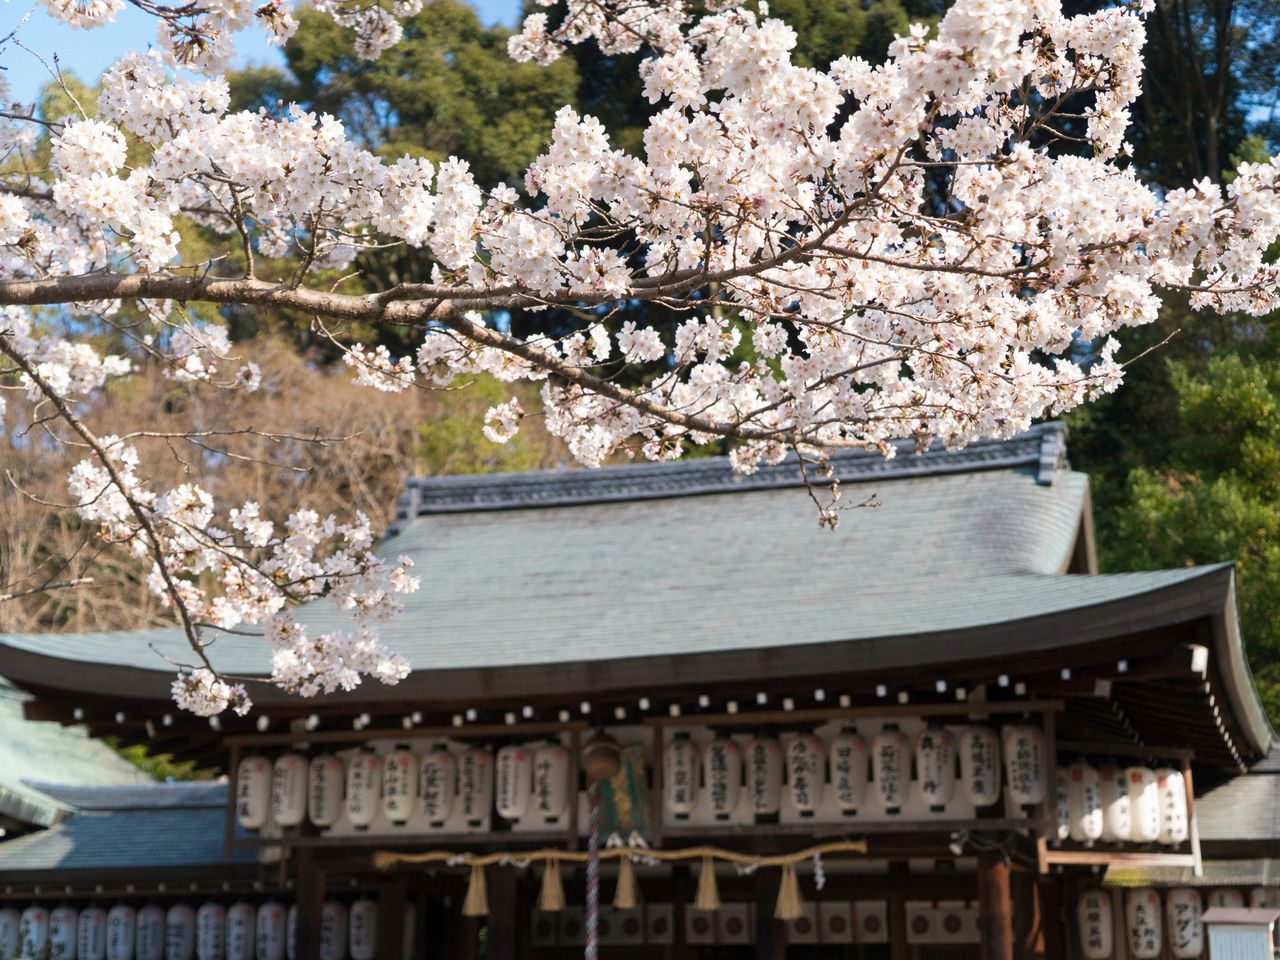 Los cerezos en flor frente al pabellón principal del santuario. Cada primer domingo de abril se celebra un festival de cerezos en su recinto.  